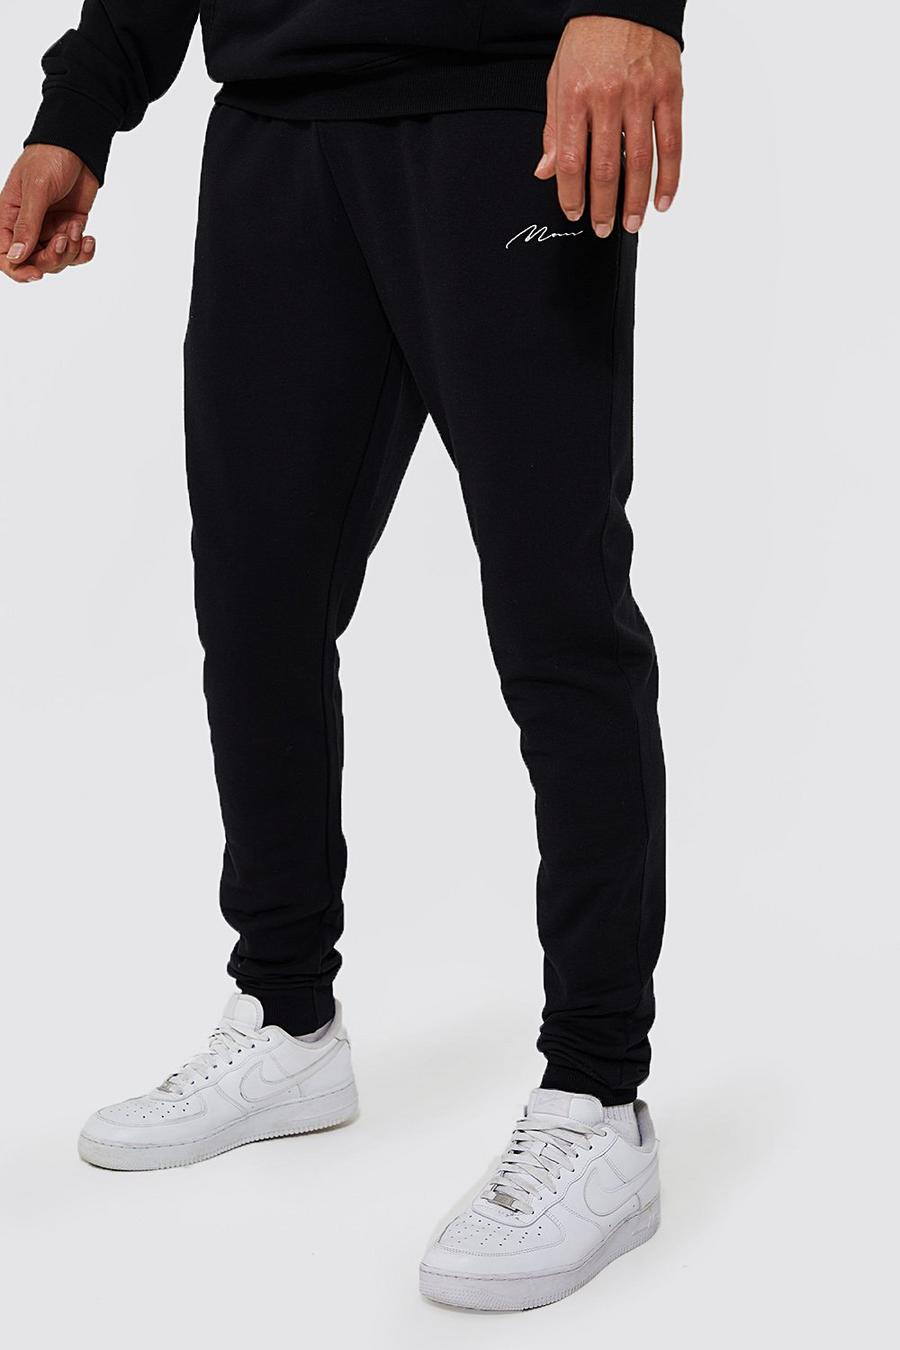 Pantaloni tuta Tall Man Skinny Fit in cotone REEL, Black negro